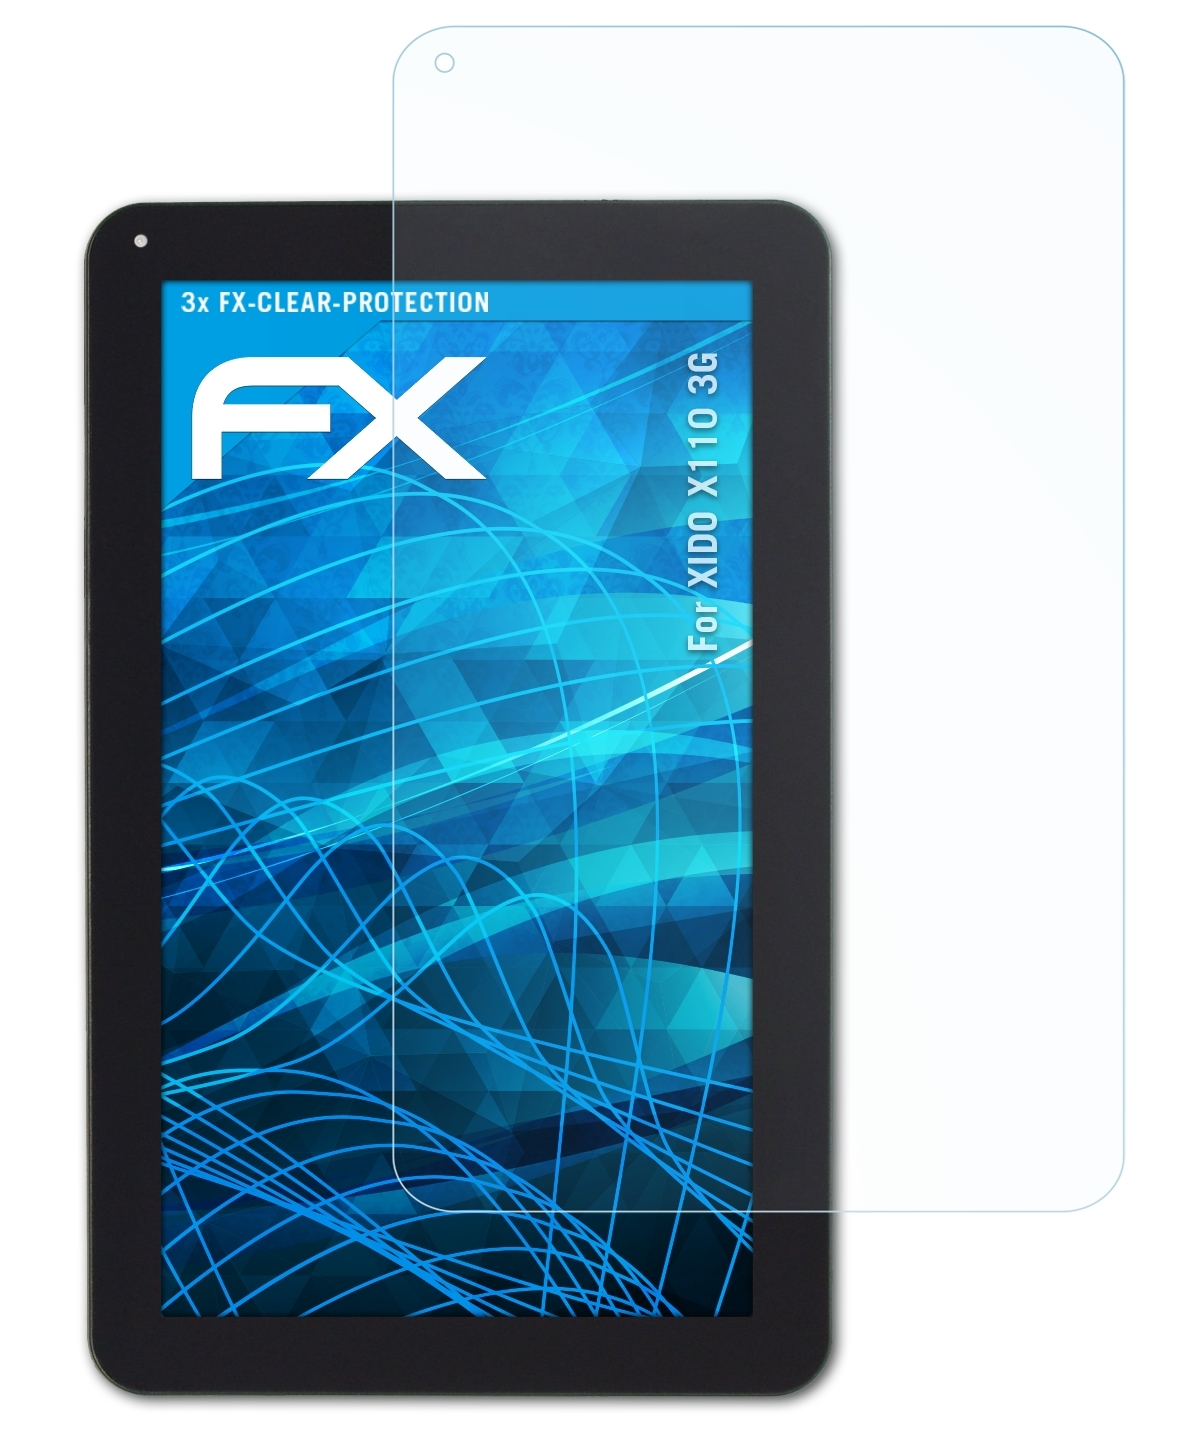 FX-Clear 3x 3G) XIDO ATFOLIX X110 Displayschutz(für